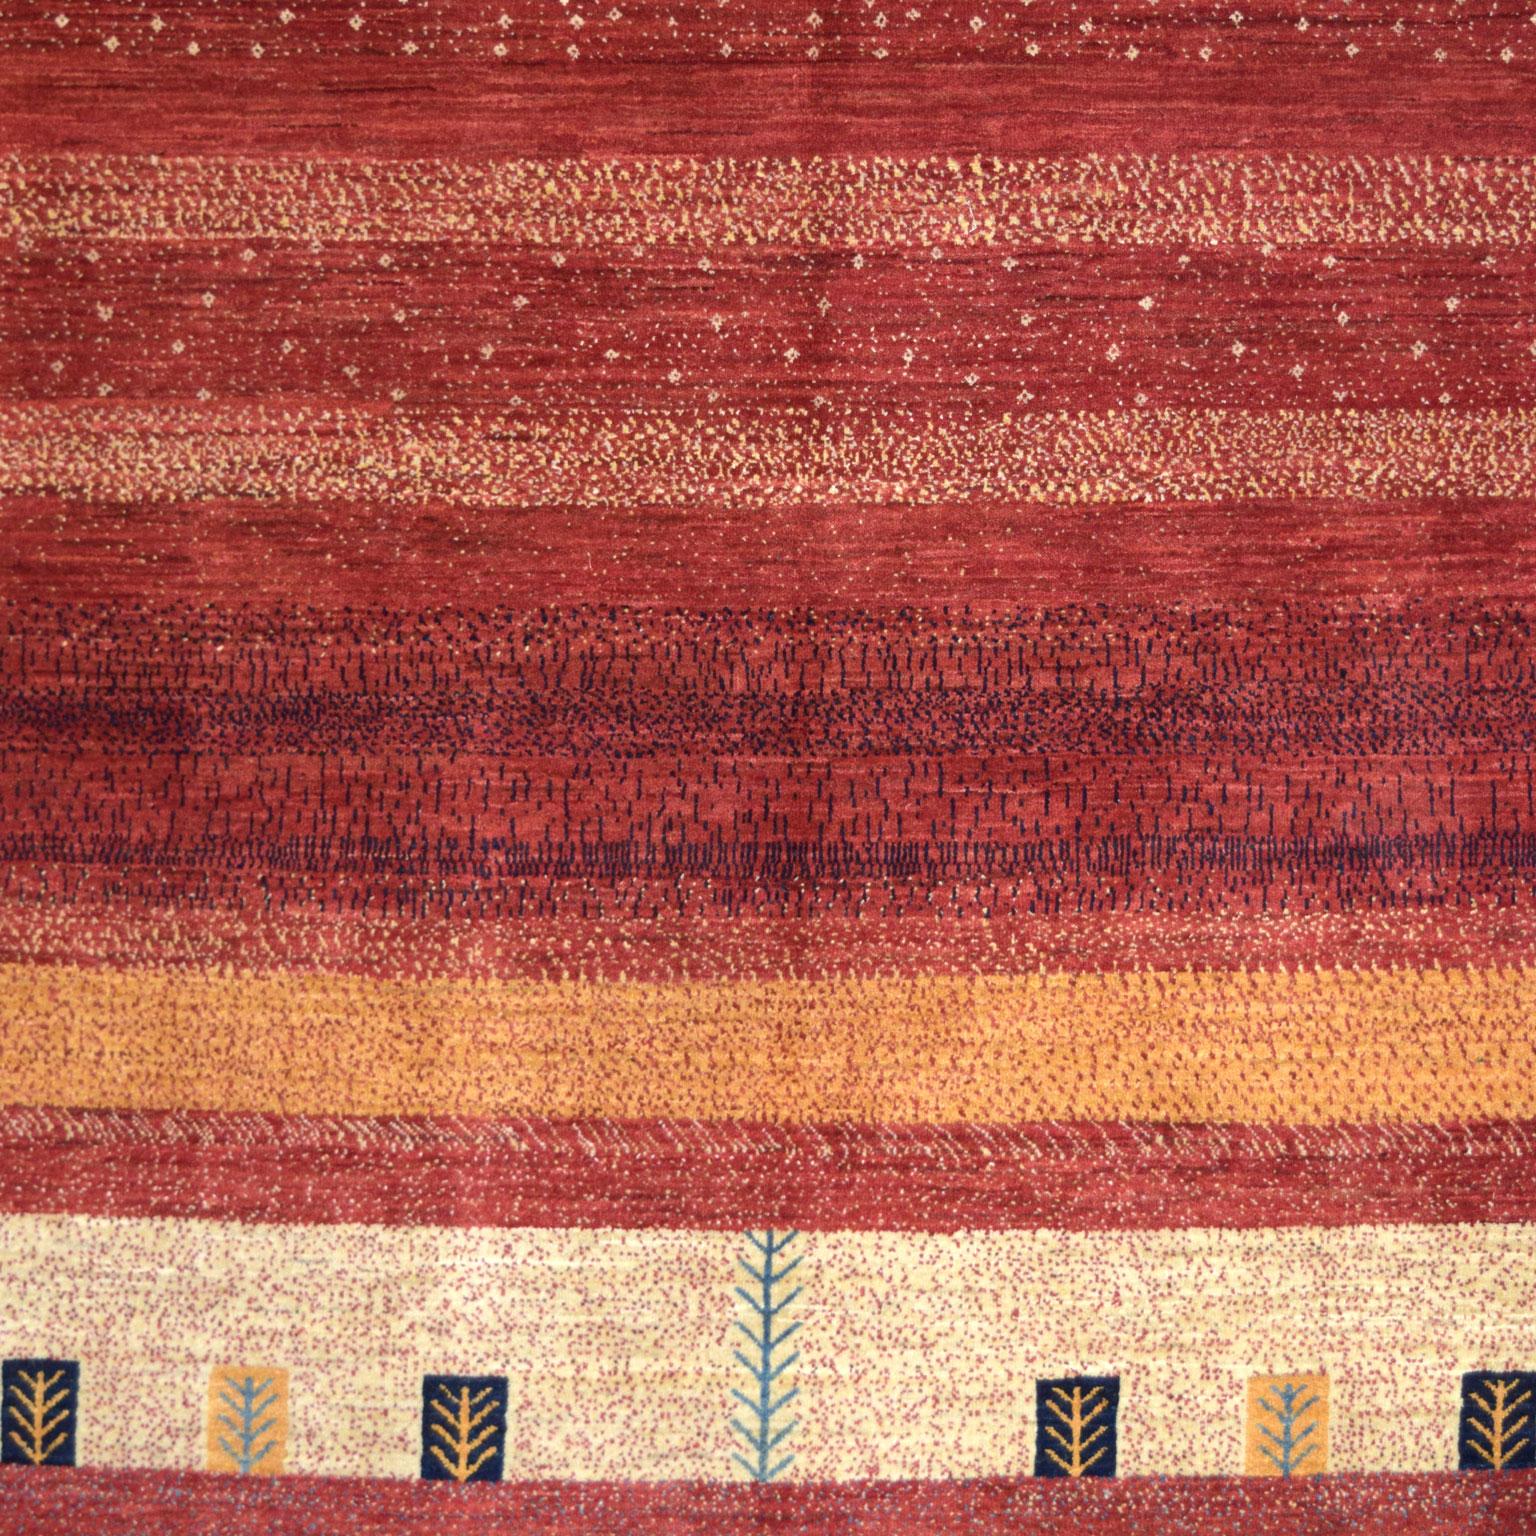 Ce tapis persan transitionnel Orley Shabahang mesure 4' x 6' et appartient à la Collection Tribal Orley Shabahang. Inspiré des tapis traditionnels persans Luri et Qashqai, le motif rouge, indigo et crème représente l'environnement du tisserand, de